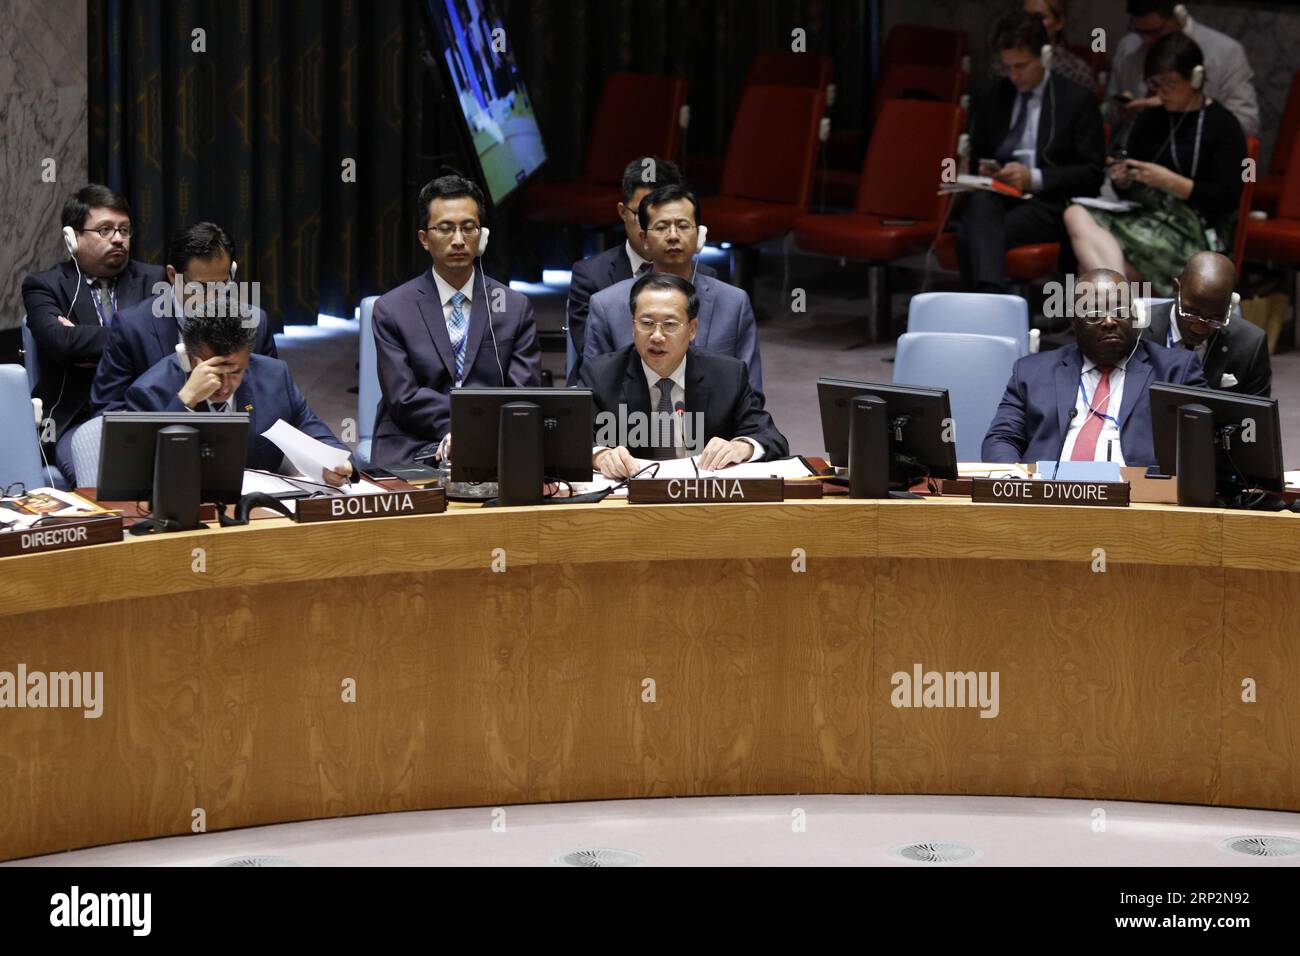 (180908) -- NATIONS UNIES, 8 septembre 2018 -- Ma Zhaoxu (C), représentante permanente de la Chine auprès des Nations Unies, s'adresse à une réunion du Conseil de sécurité des Nations Unies sur la Syrie au siège des Nations Unies à New York, le 7 septembre 2018. Ma Zhaoxu a appelé vendredi toutes les parties au conflit syrien à intensifier leurs efforts diplomatiques, à aborder les problèmes par le dialogue et à faciliter la désescalade dans ce pays déchiré par la guerre. (Jmmn) RÉUNION DU CONSEIL DE SÉCURITÉ DE l'ONU-CHINE LixMuzi PUBLICATIONxNOTxINxCHN Banque D'Images